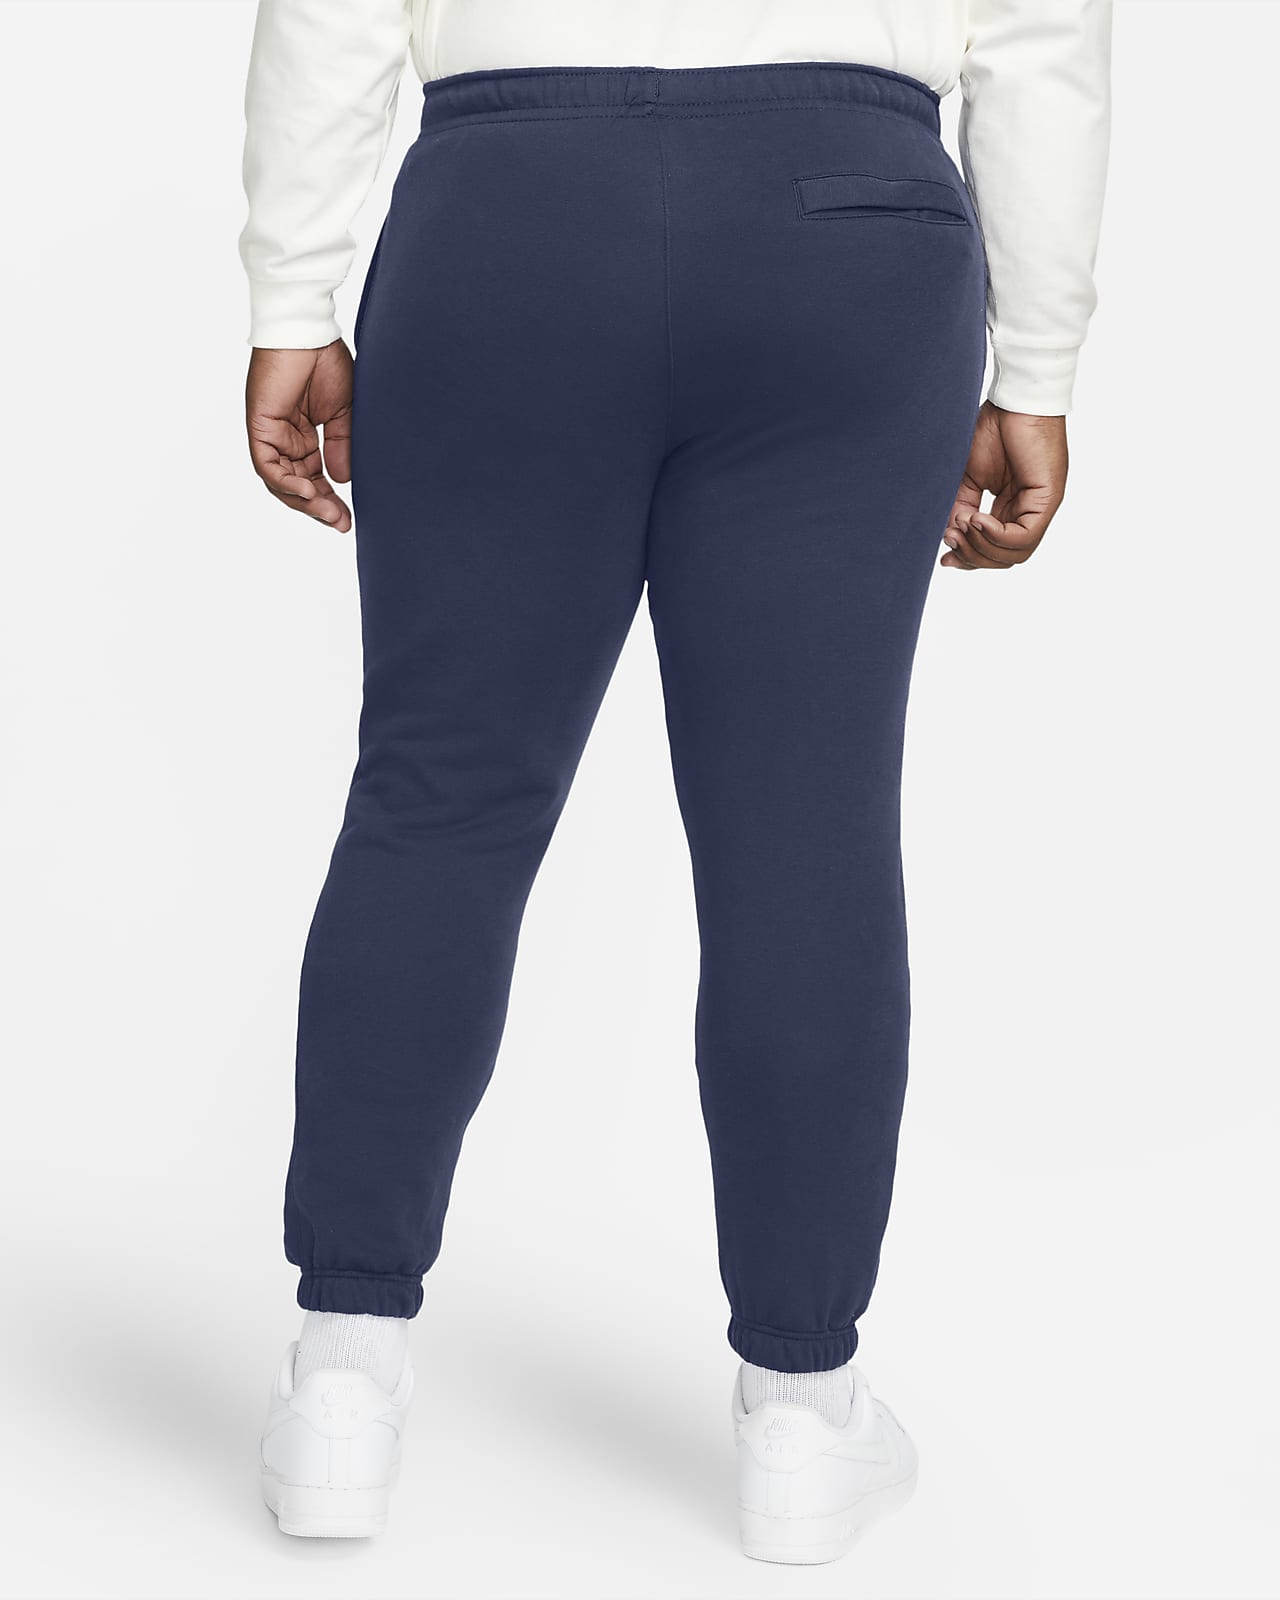 Nike Sportswear Club Swoosh Fleece Jogger Pants 716830-063 Grey